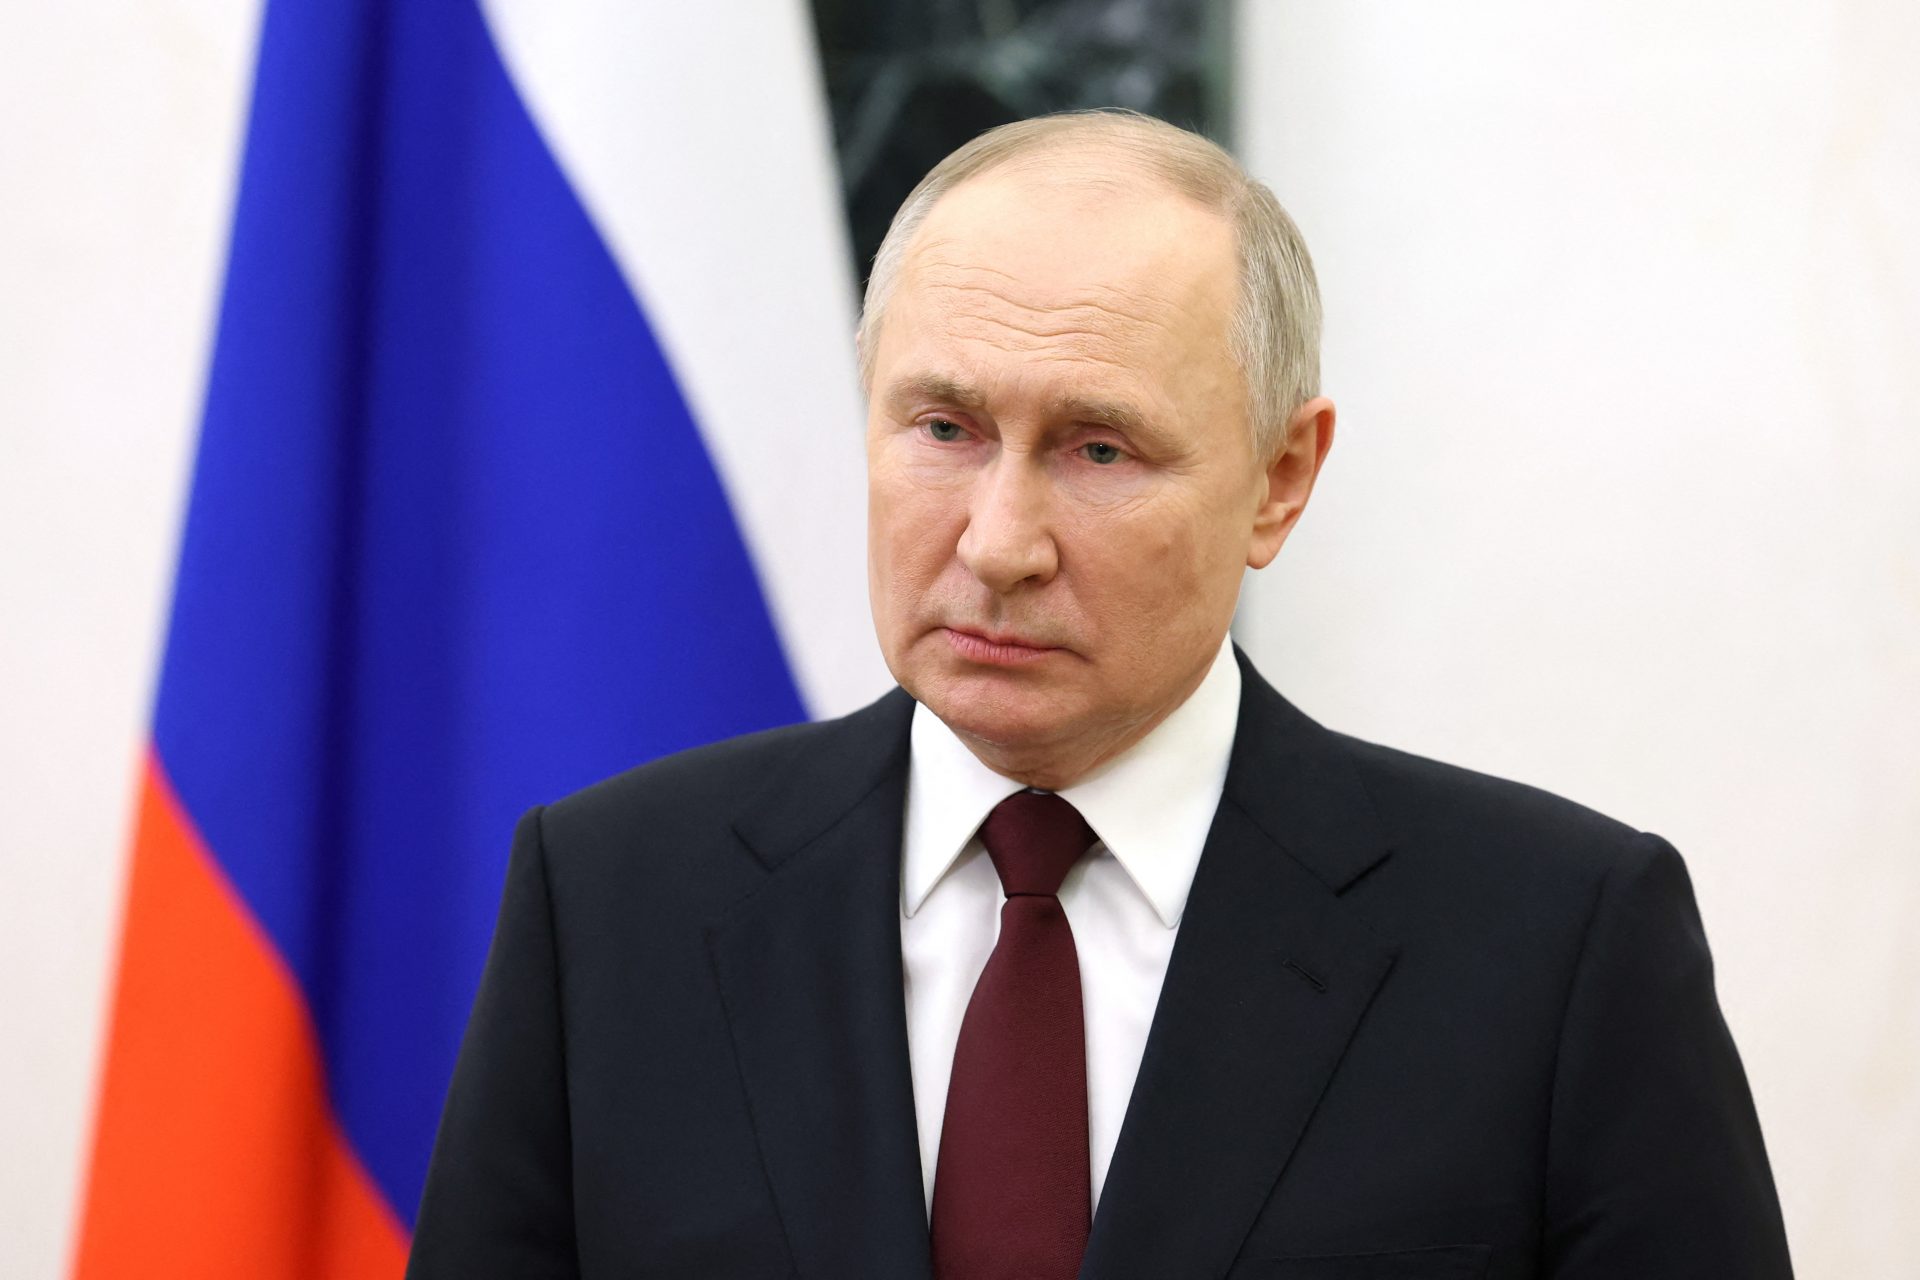 De nachtmerrie van Poetin: de Oostzee wordt nu gedomineerd door de NAVO